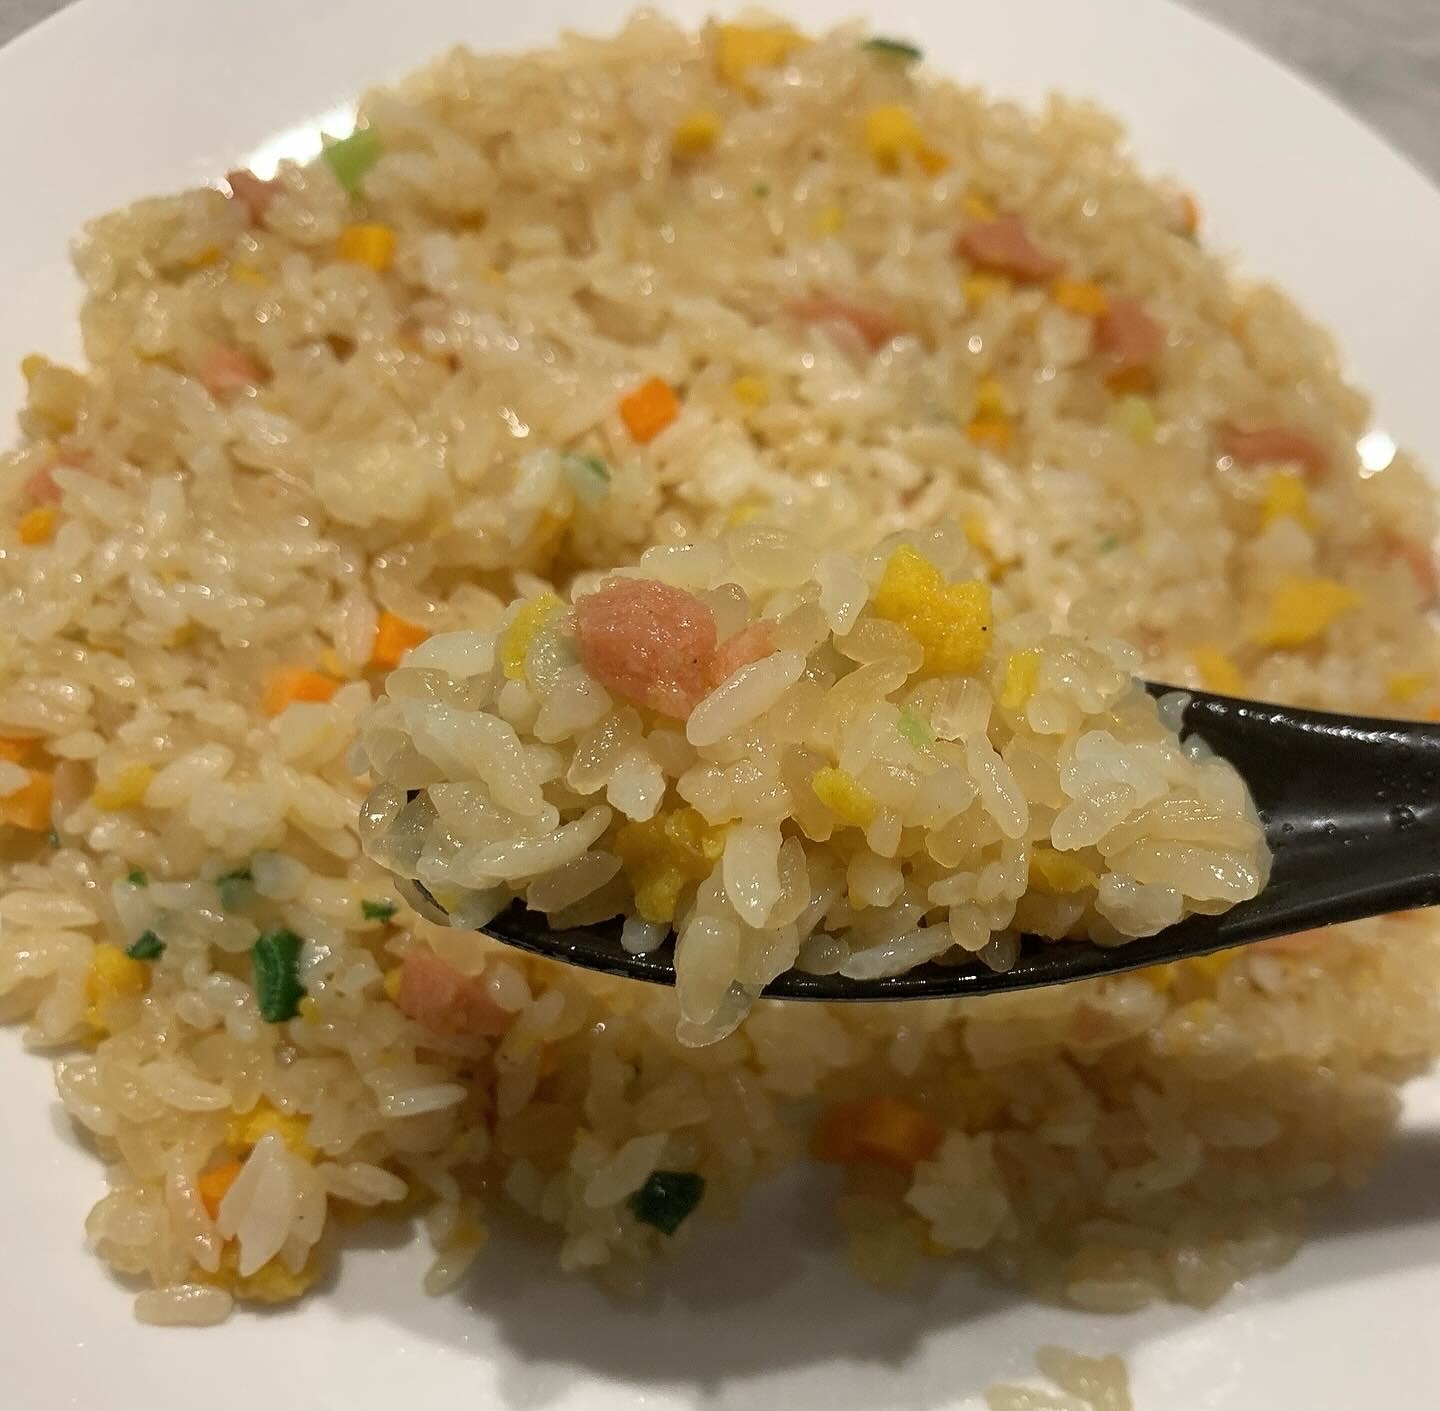 BEYOND FREE(ビヨンドフリー) こんにゃく米とお米で作った炒飯の良い点・メリットに関するはまちママさんの口コミ画像3